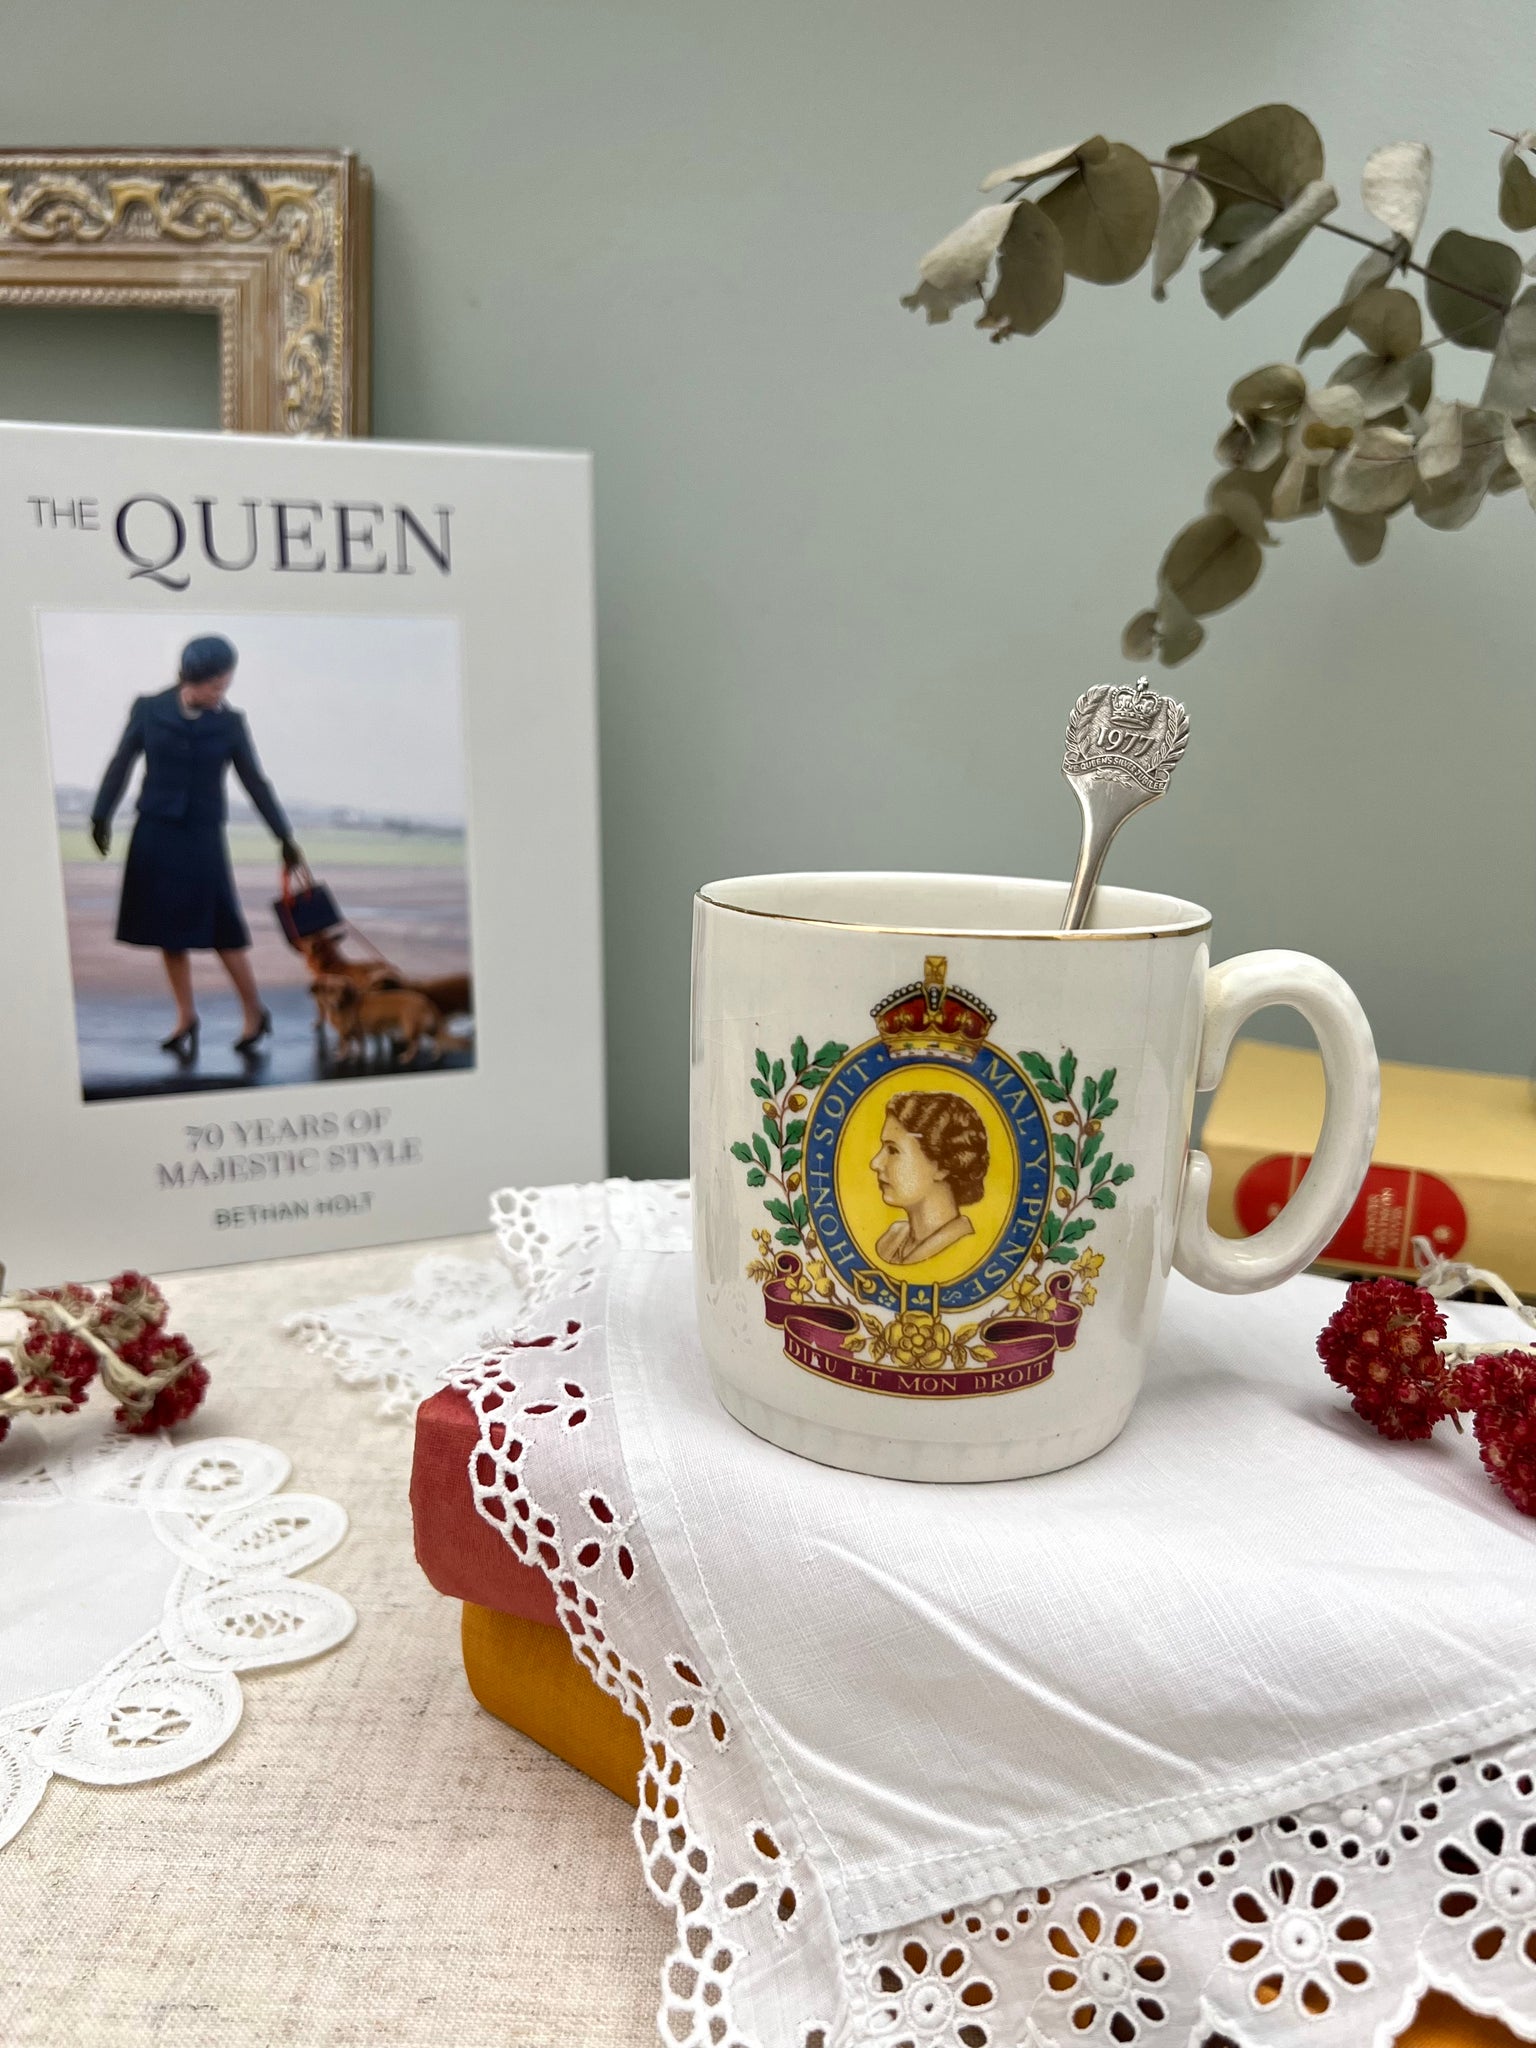 エリザベス女王 1953年コロネーション(戴冠式)記念マグカップ – caronrose